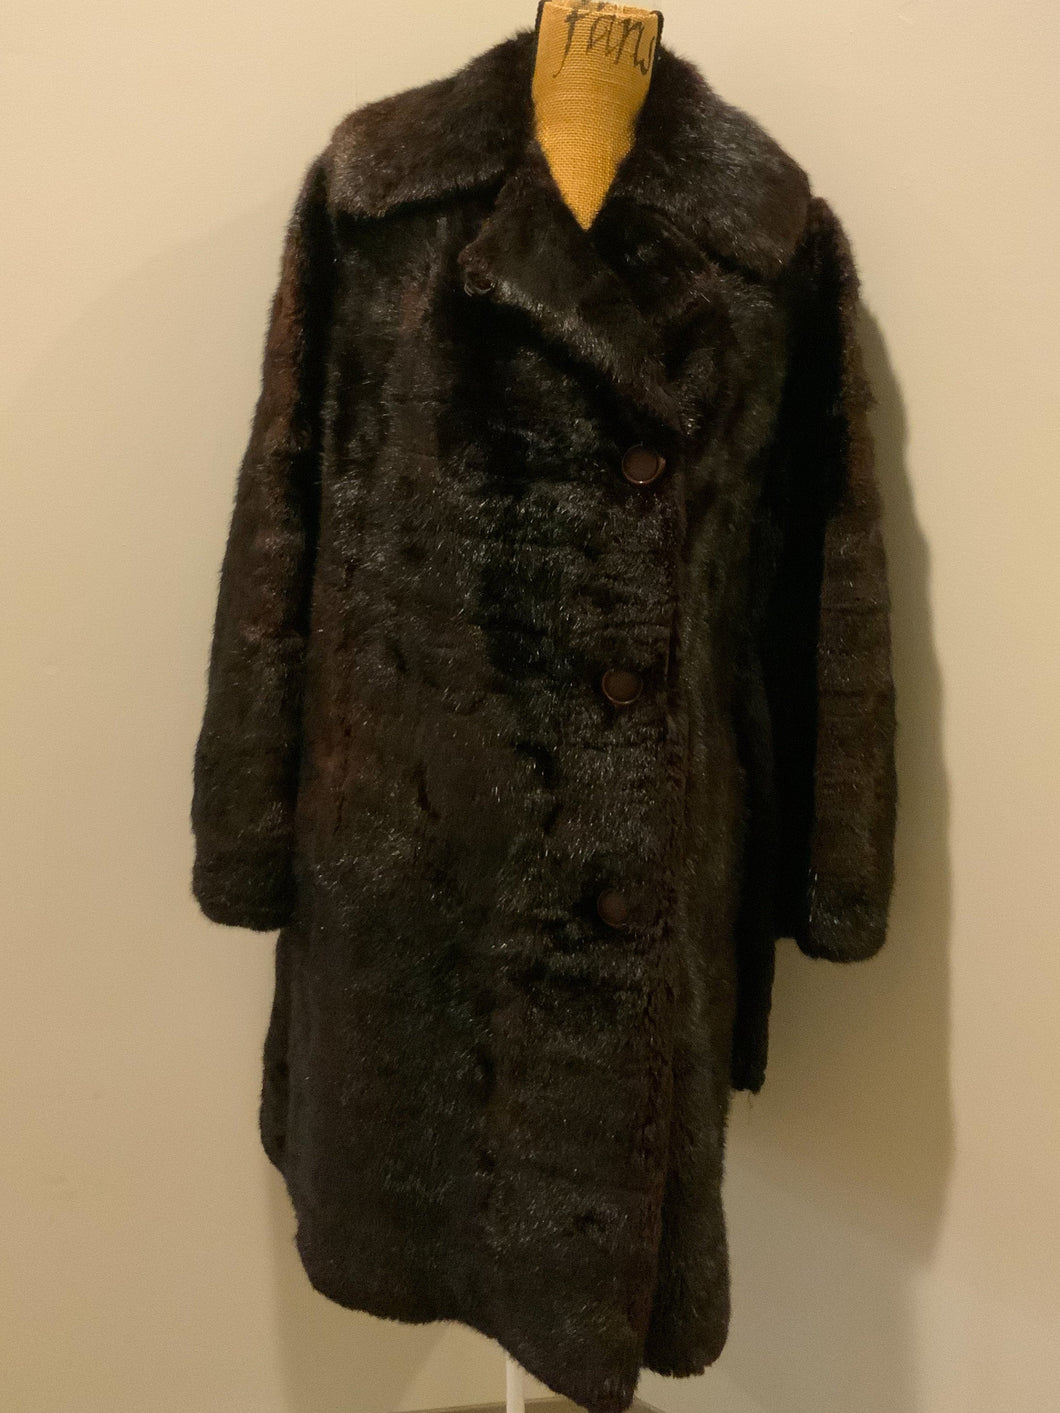 Kingspier Vintage - Vintage dark brown shorn beaver fur coat, “K” monogram embroidered on inside pocket, black lining with red and black foliage motif